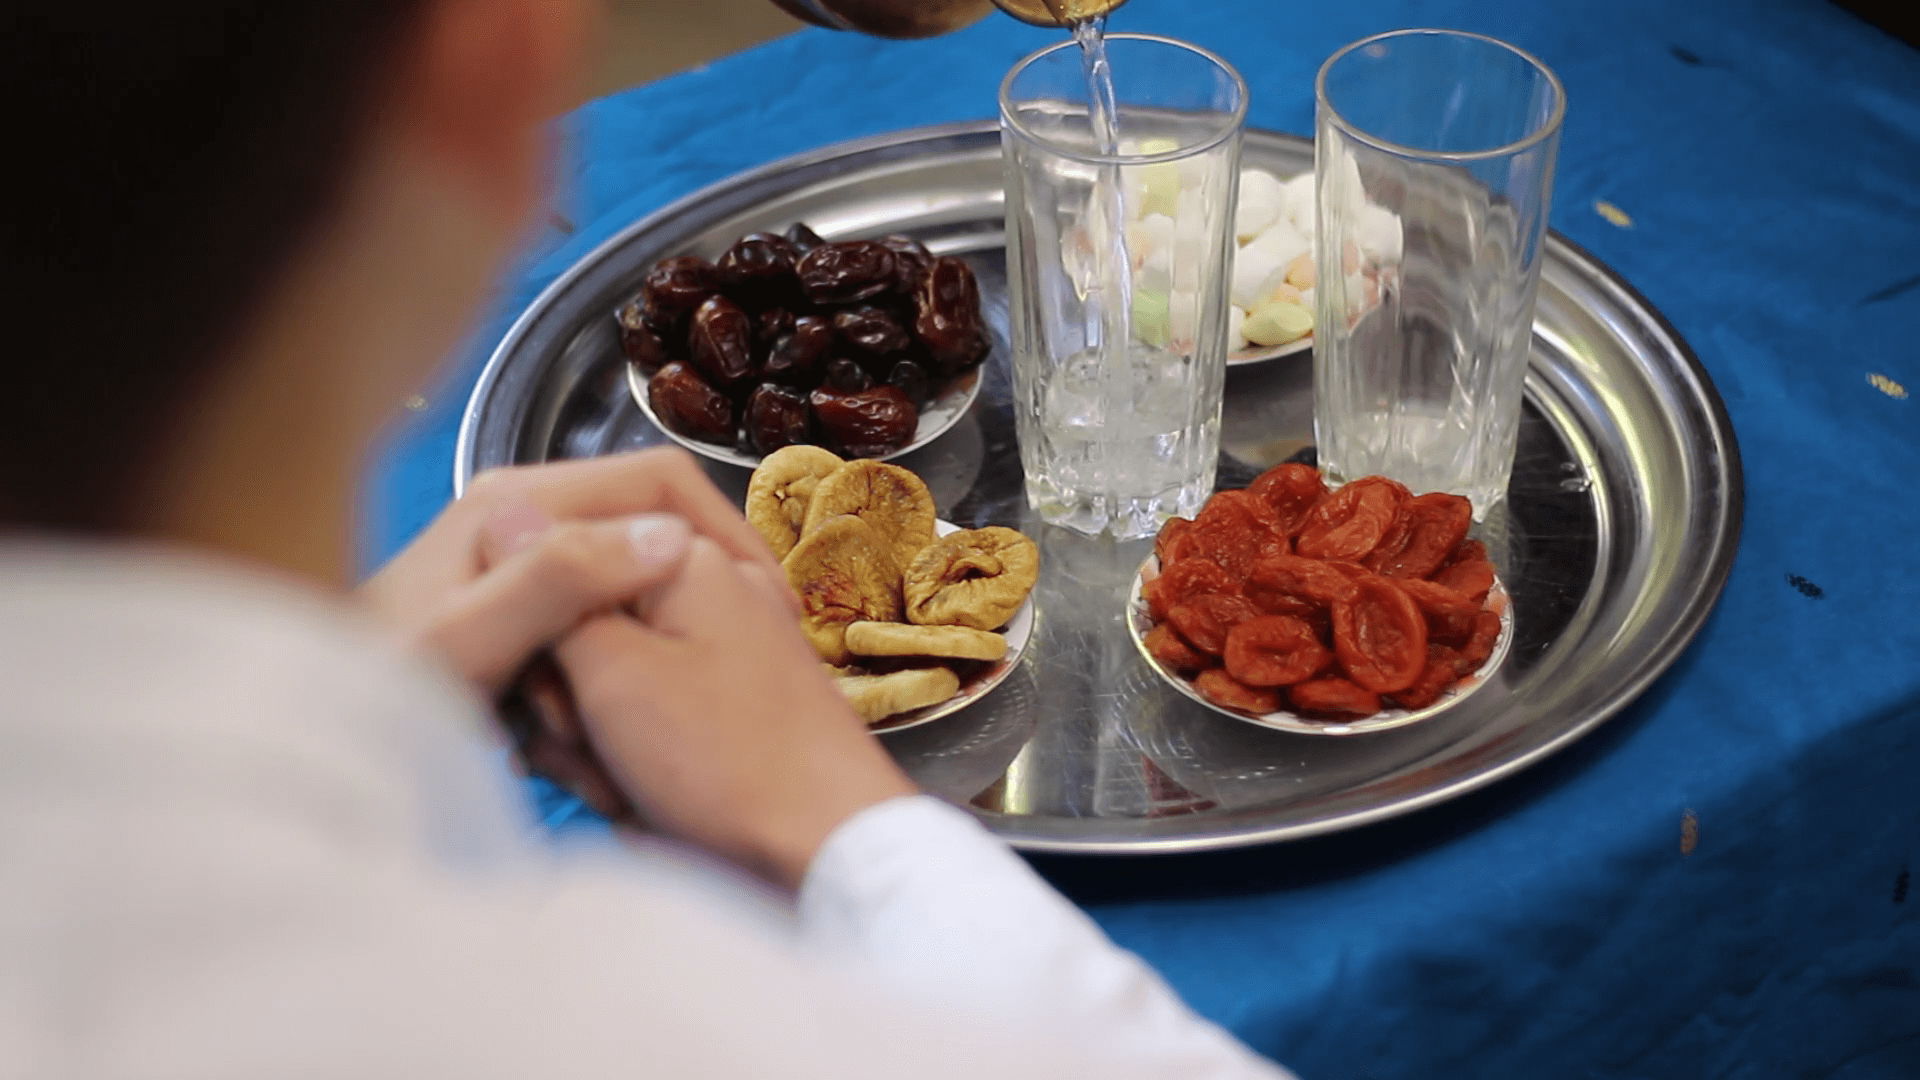 هل تشعر بالعطش الشديد أثناء الصوم؟.. إليك 4 نصائح لتجنبه خلال شهر رمضان